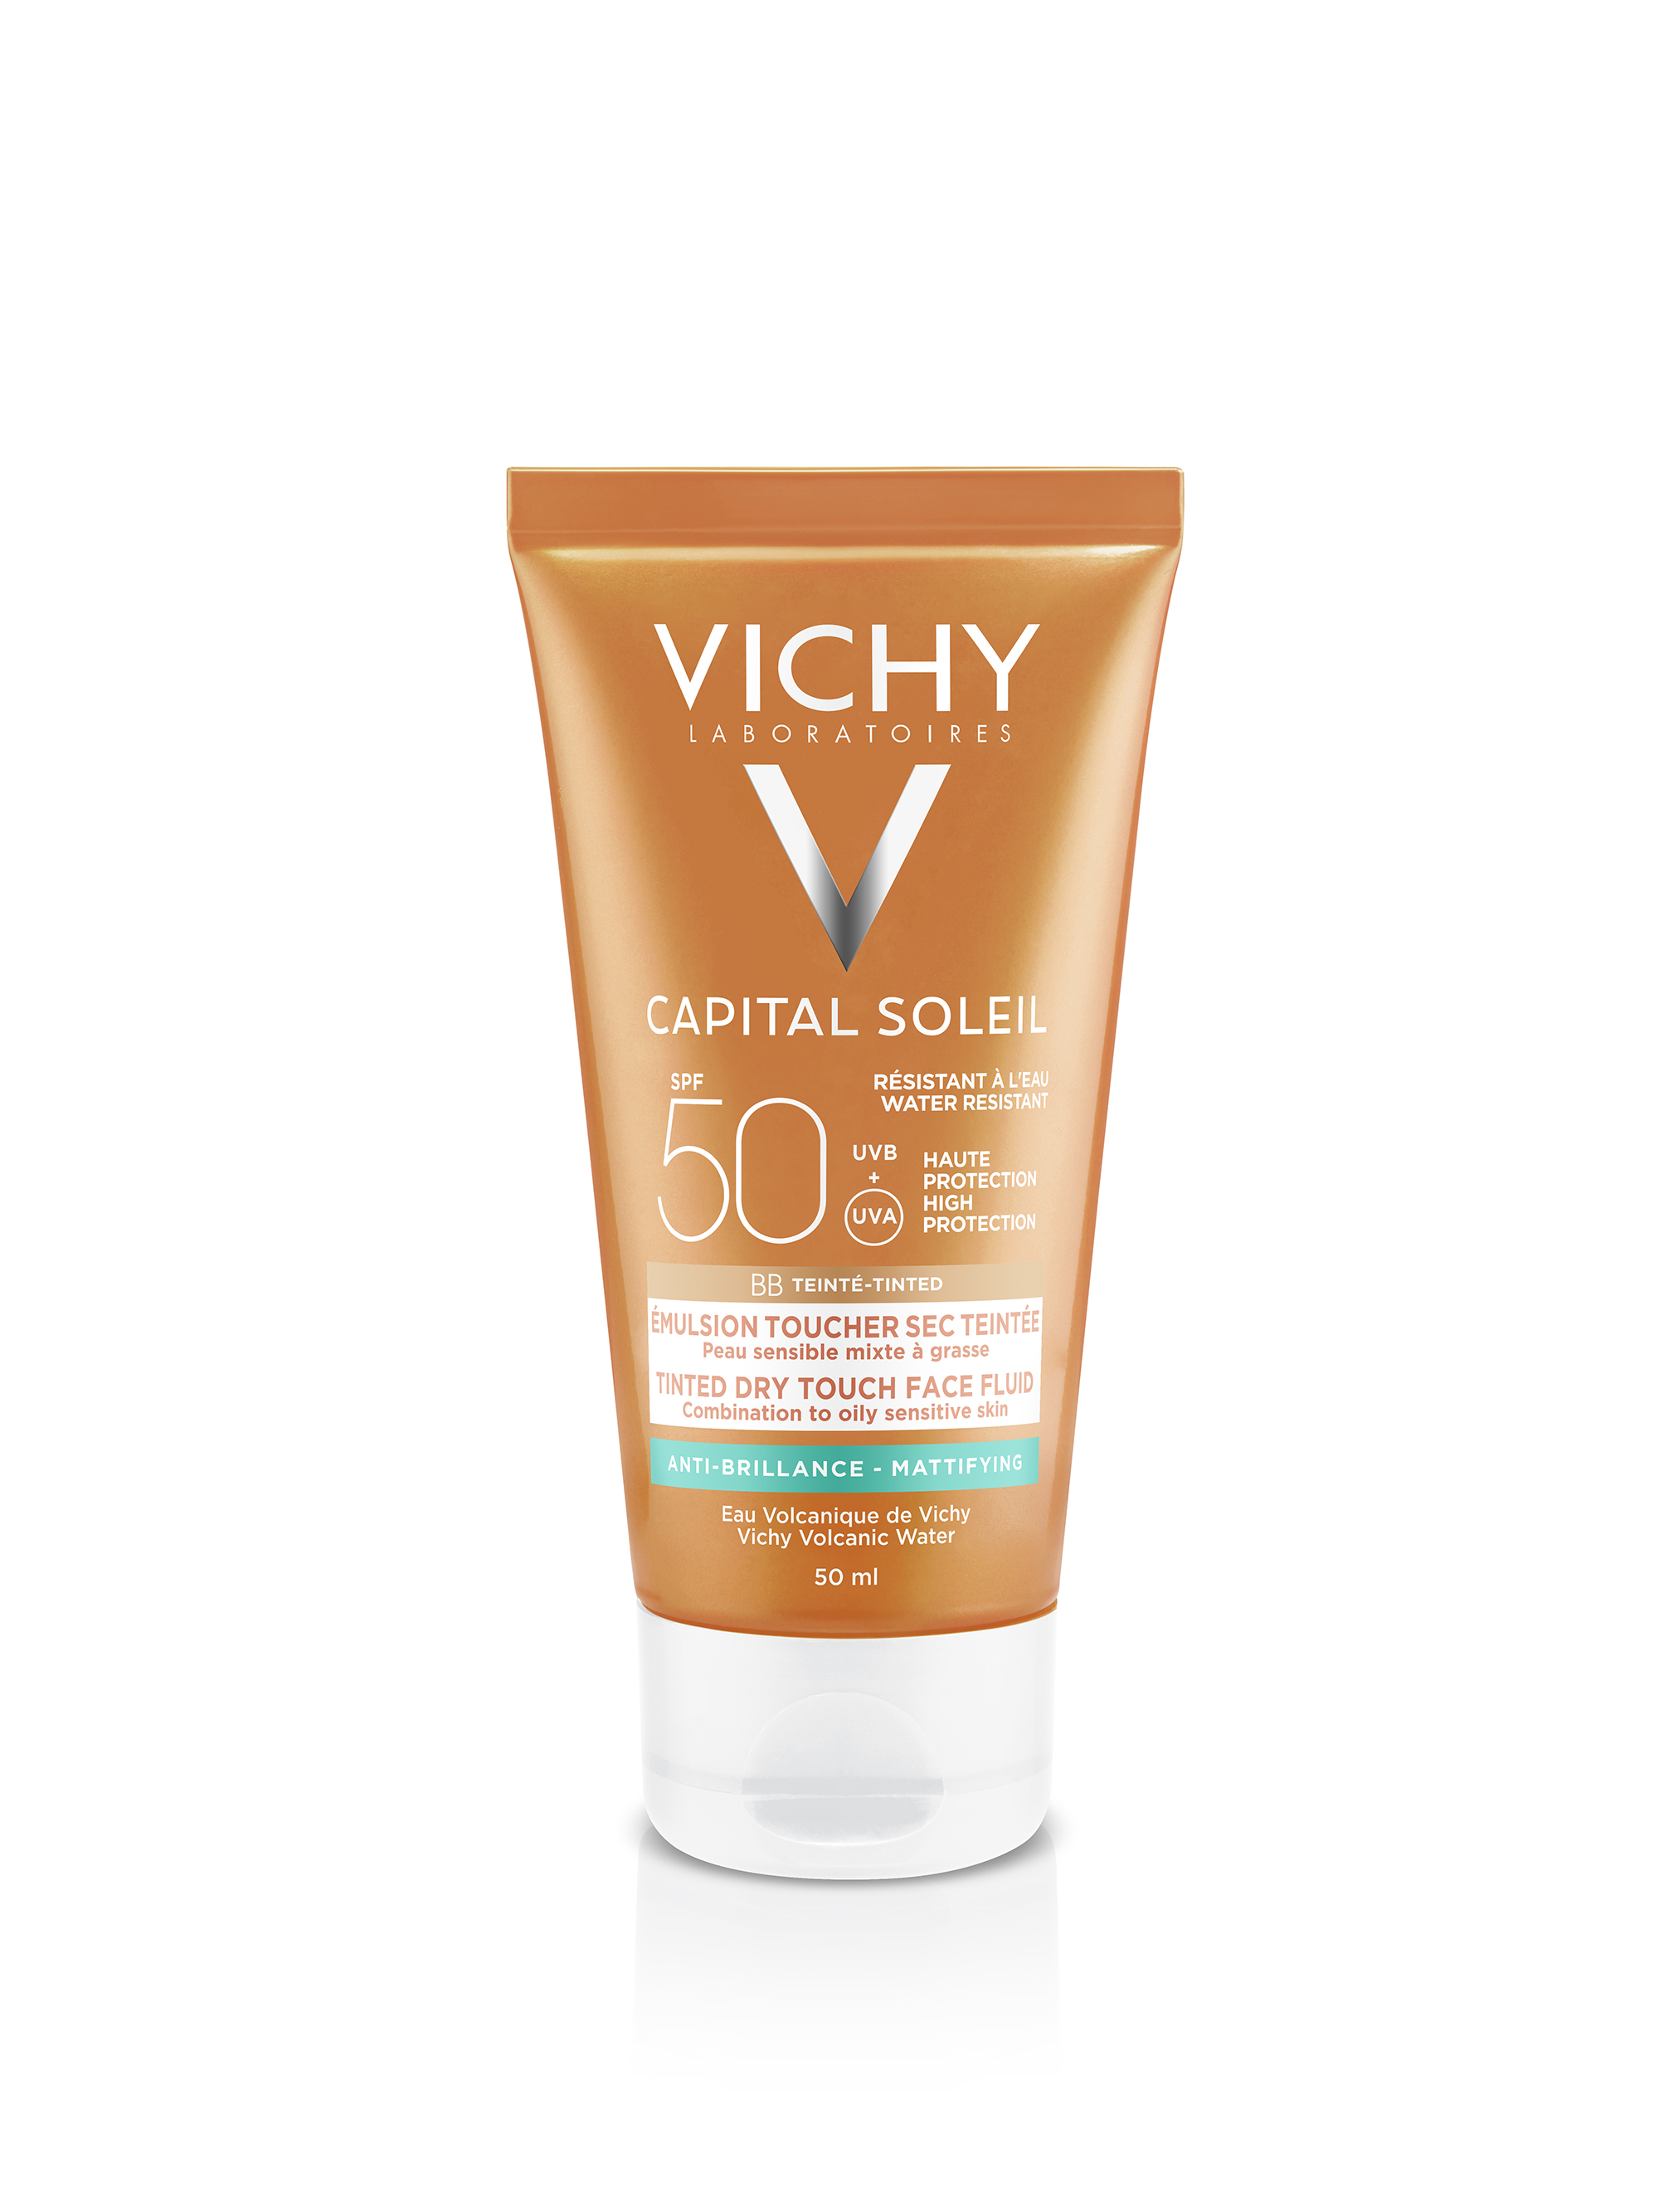 Vichy Capital Soleil Bb Dry Touch Crème SPF50